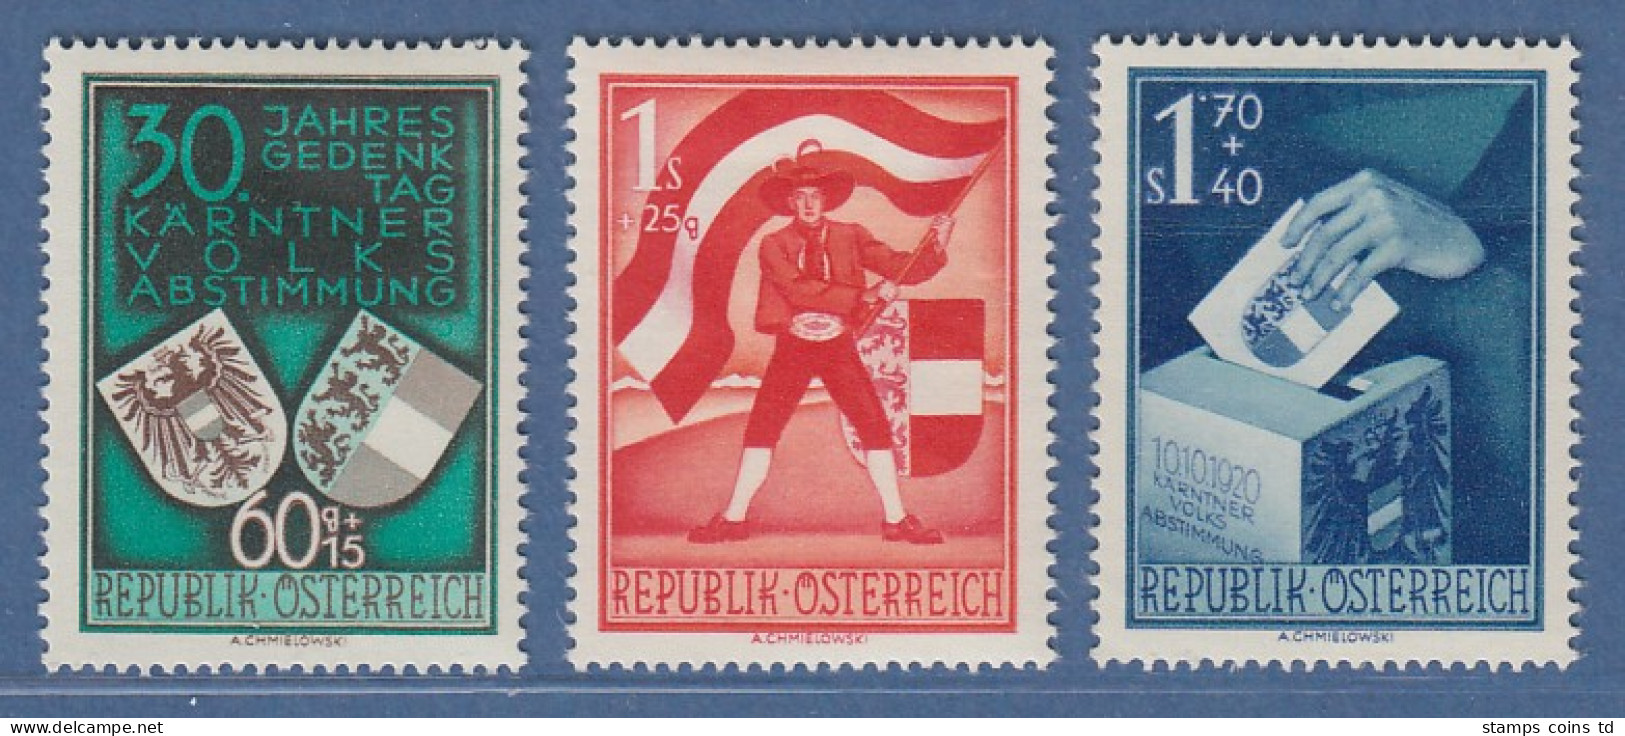 Österreich 1950 Sondermarken Volksabstimmung In Kärnten Mi.-Nr. 952-954 - Neufs